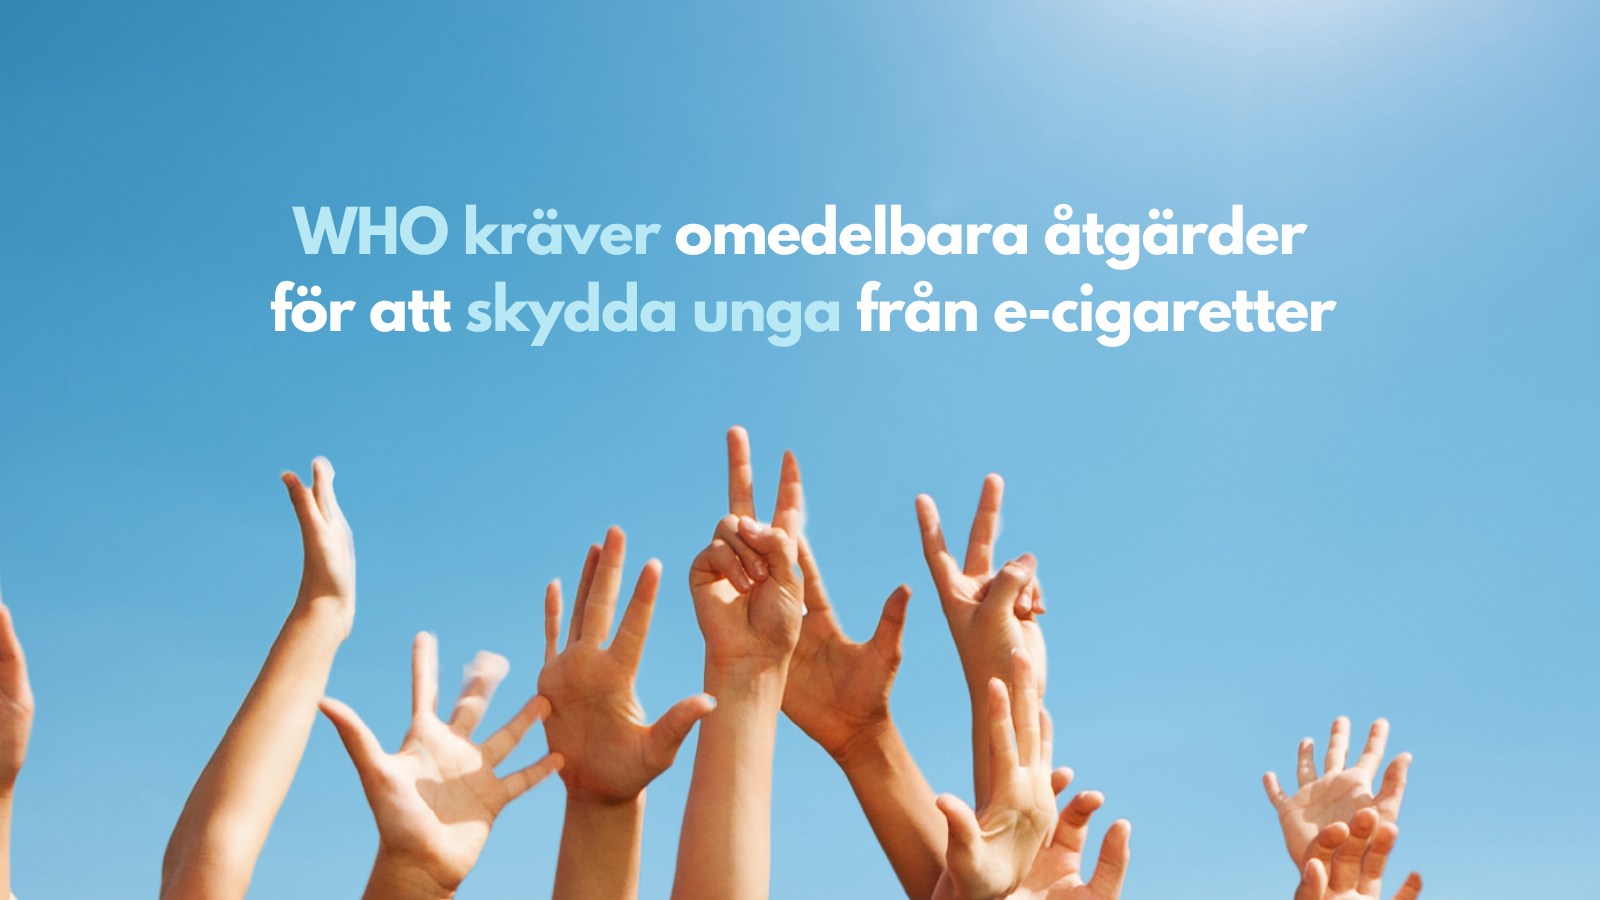 WHO kräver omedelbara åtgärder för att skydda unga från e-cigaretter